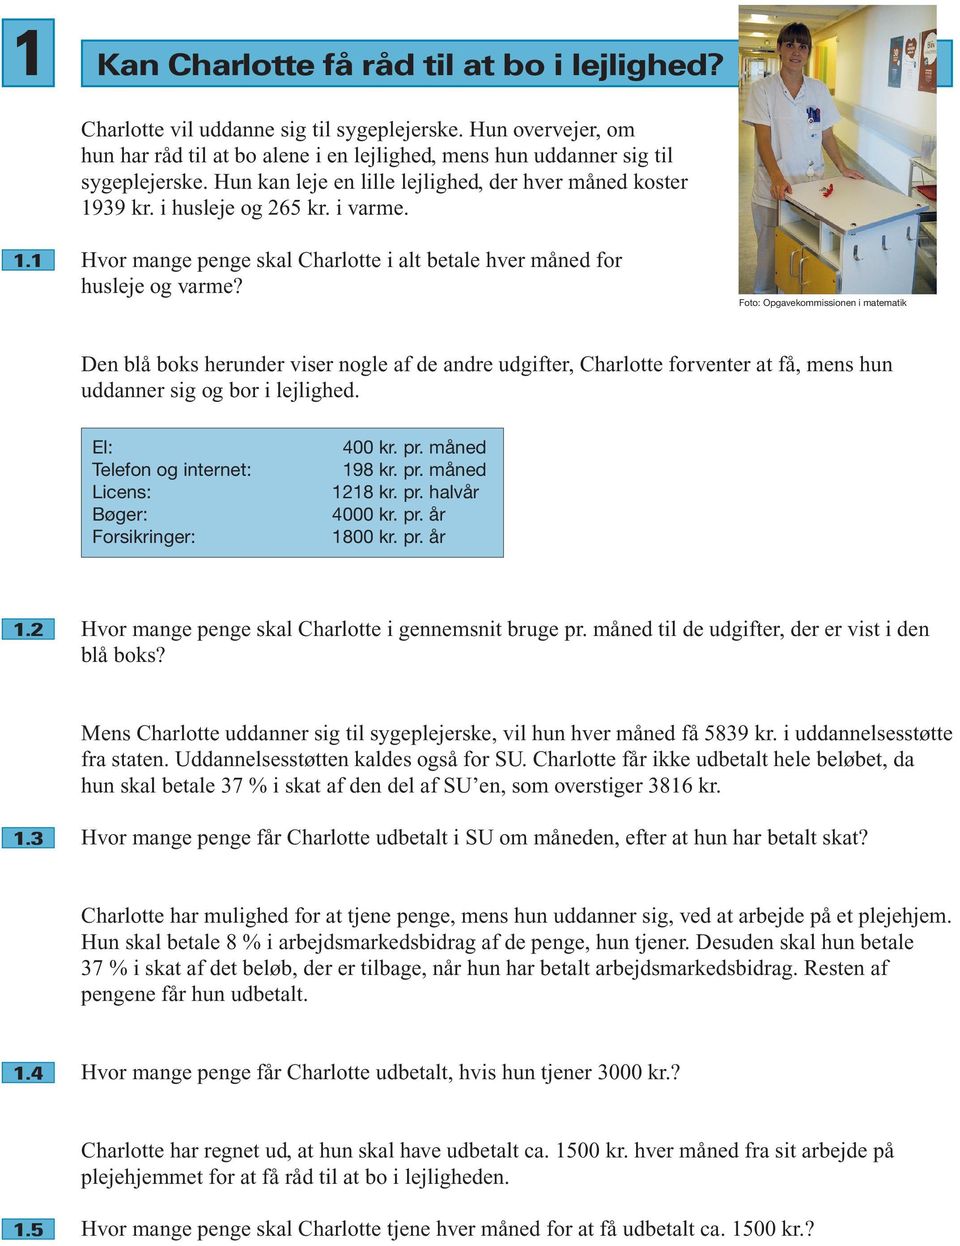 Foto: Opgavekommissionen i matematik Den blå boks herunder viser nogle af de andre udgifter, Charlotte forventer at få, mens hun uddanner sig og bor i lejlighed.